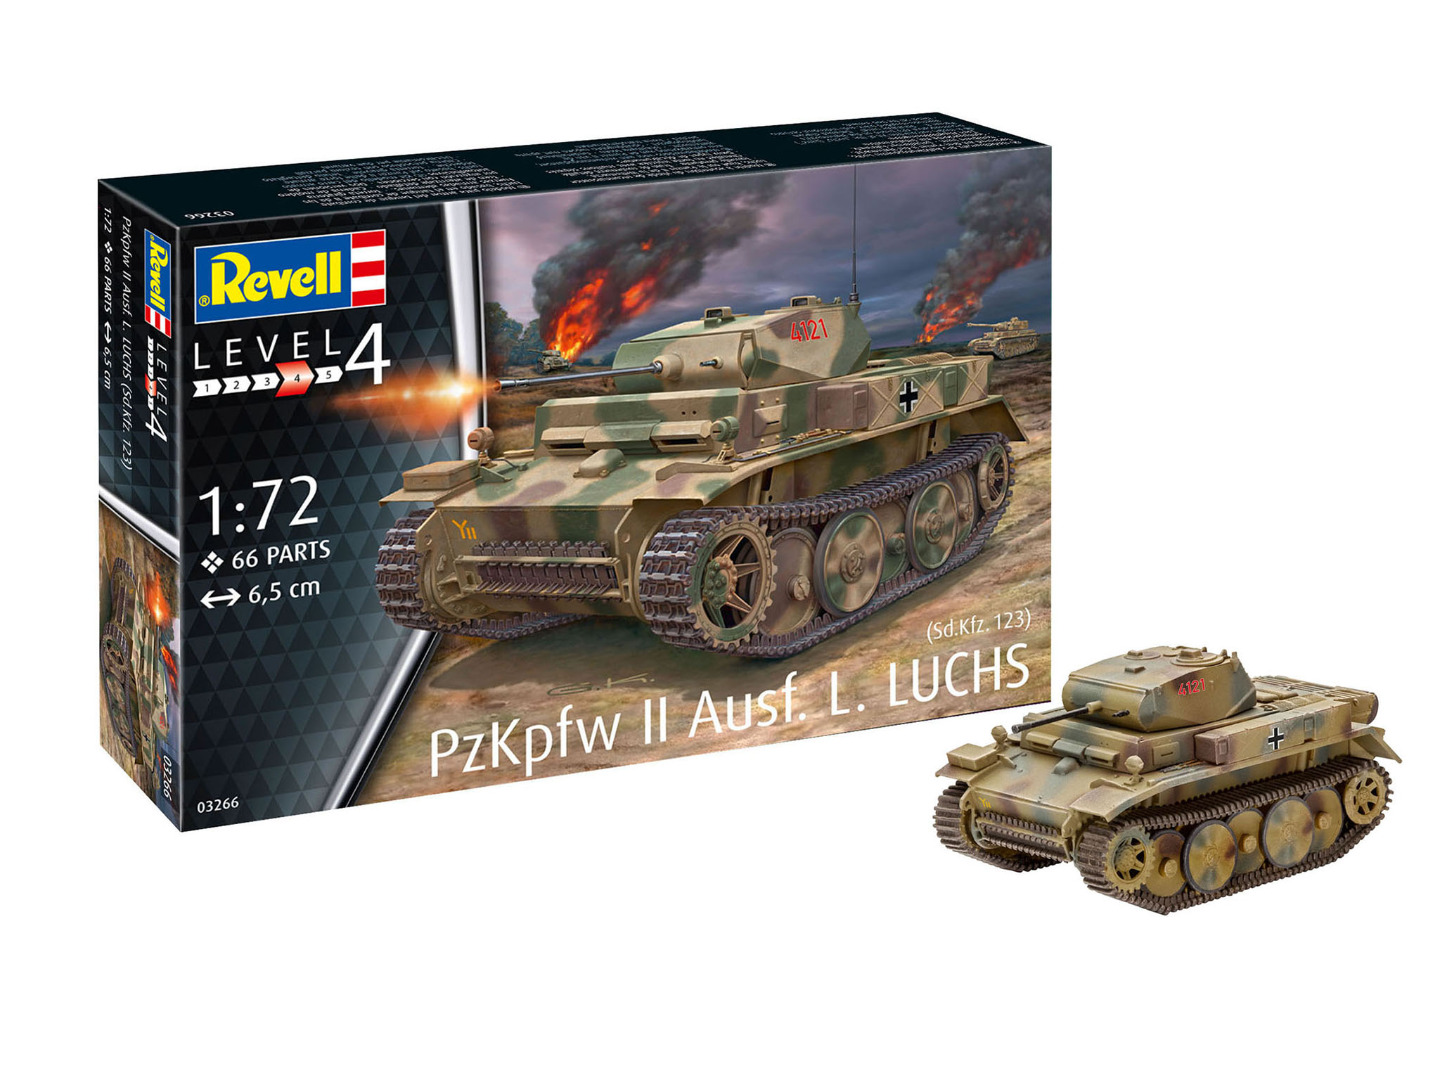 Revell Model Kit PzKpfw II Ausf.L LUCHS (Sd.Kfz.123) 1:72